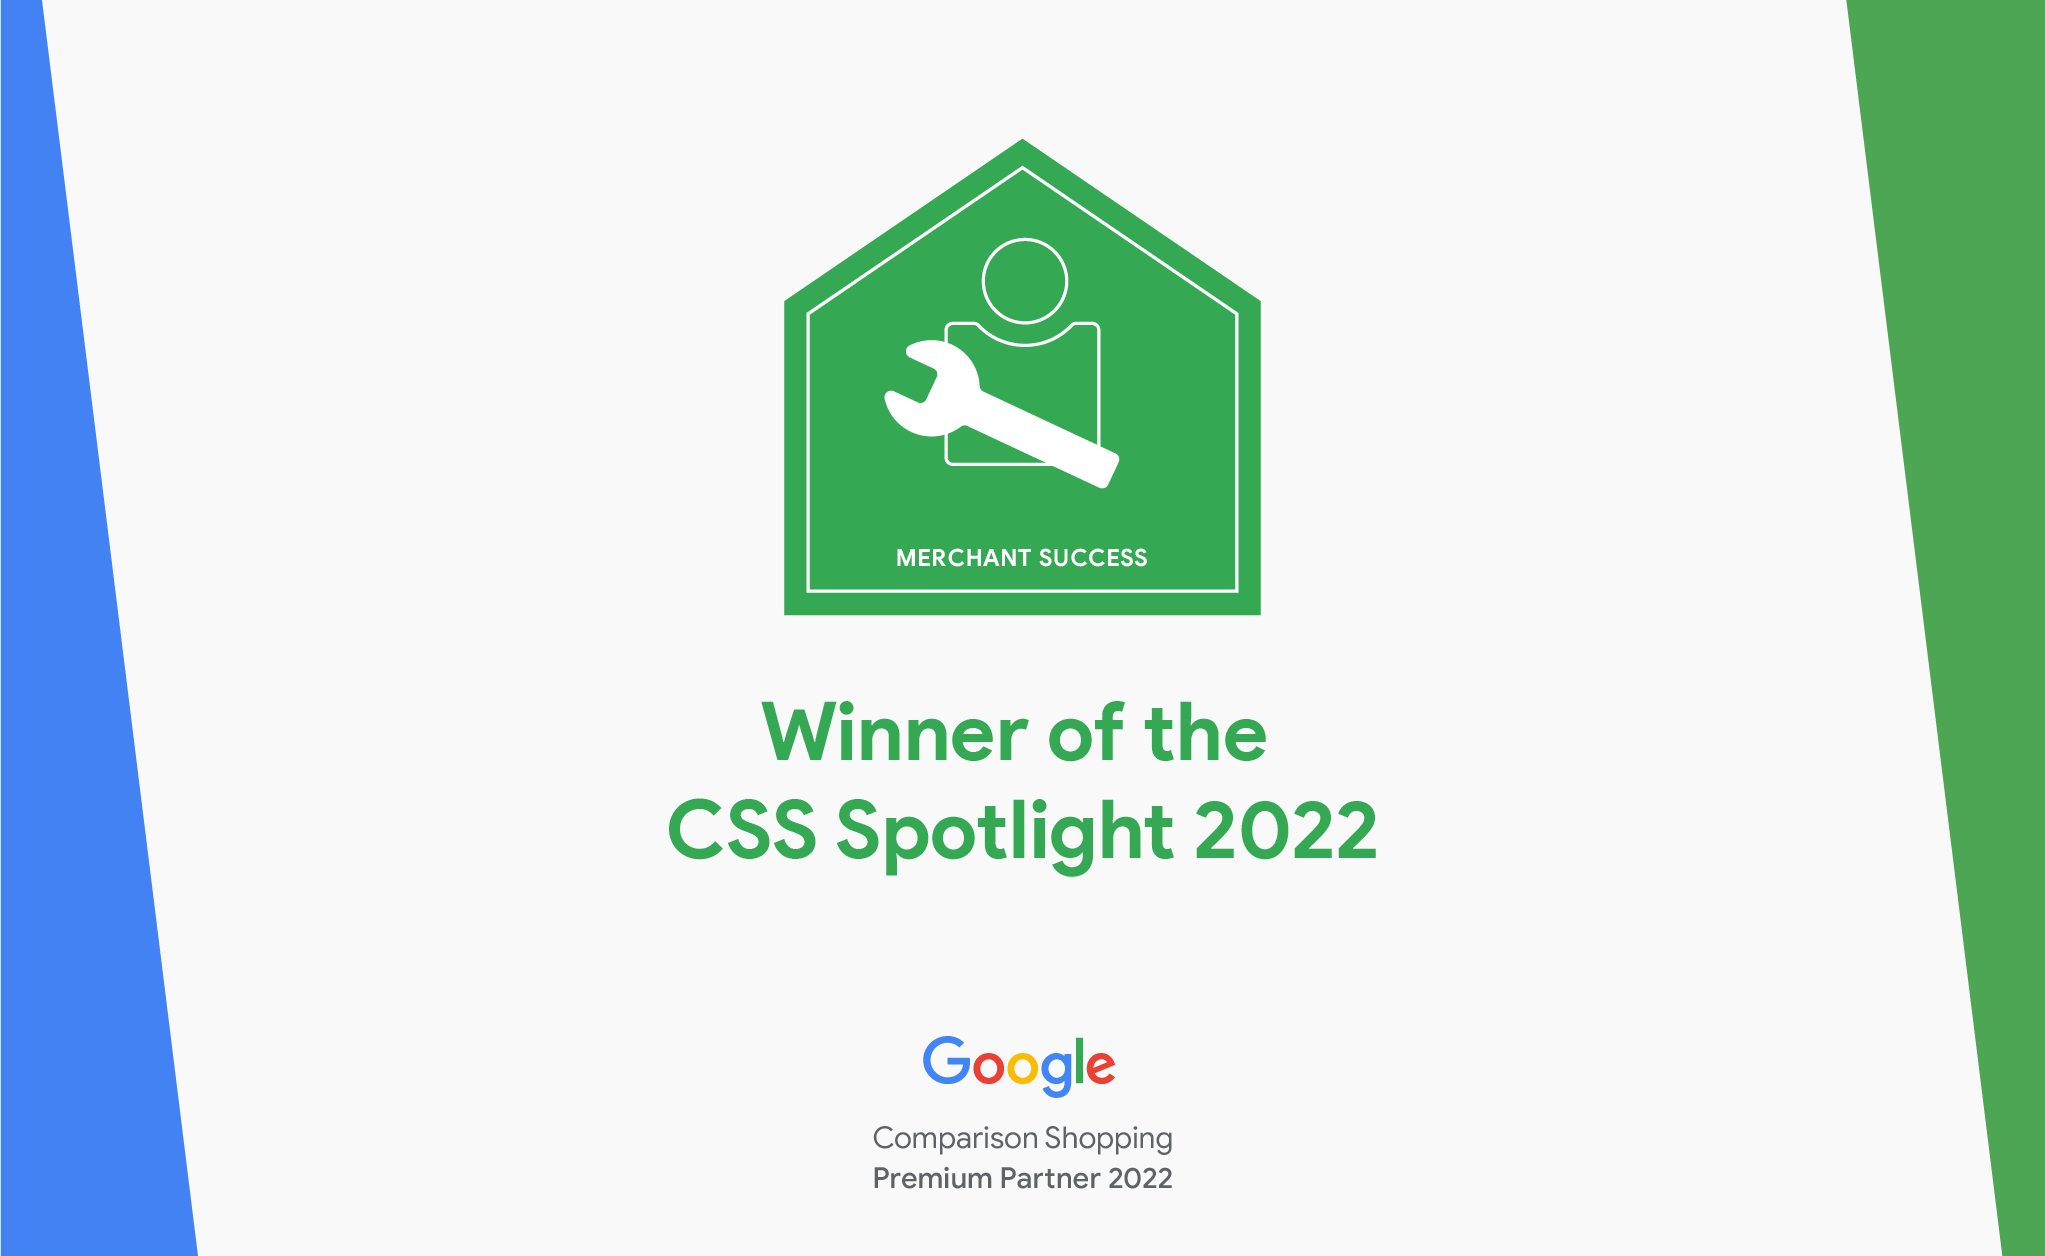 Winner of the CSS Spotlight 2022 Award - Google CSS Spotlight award